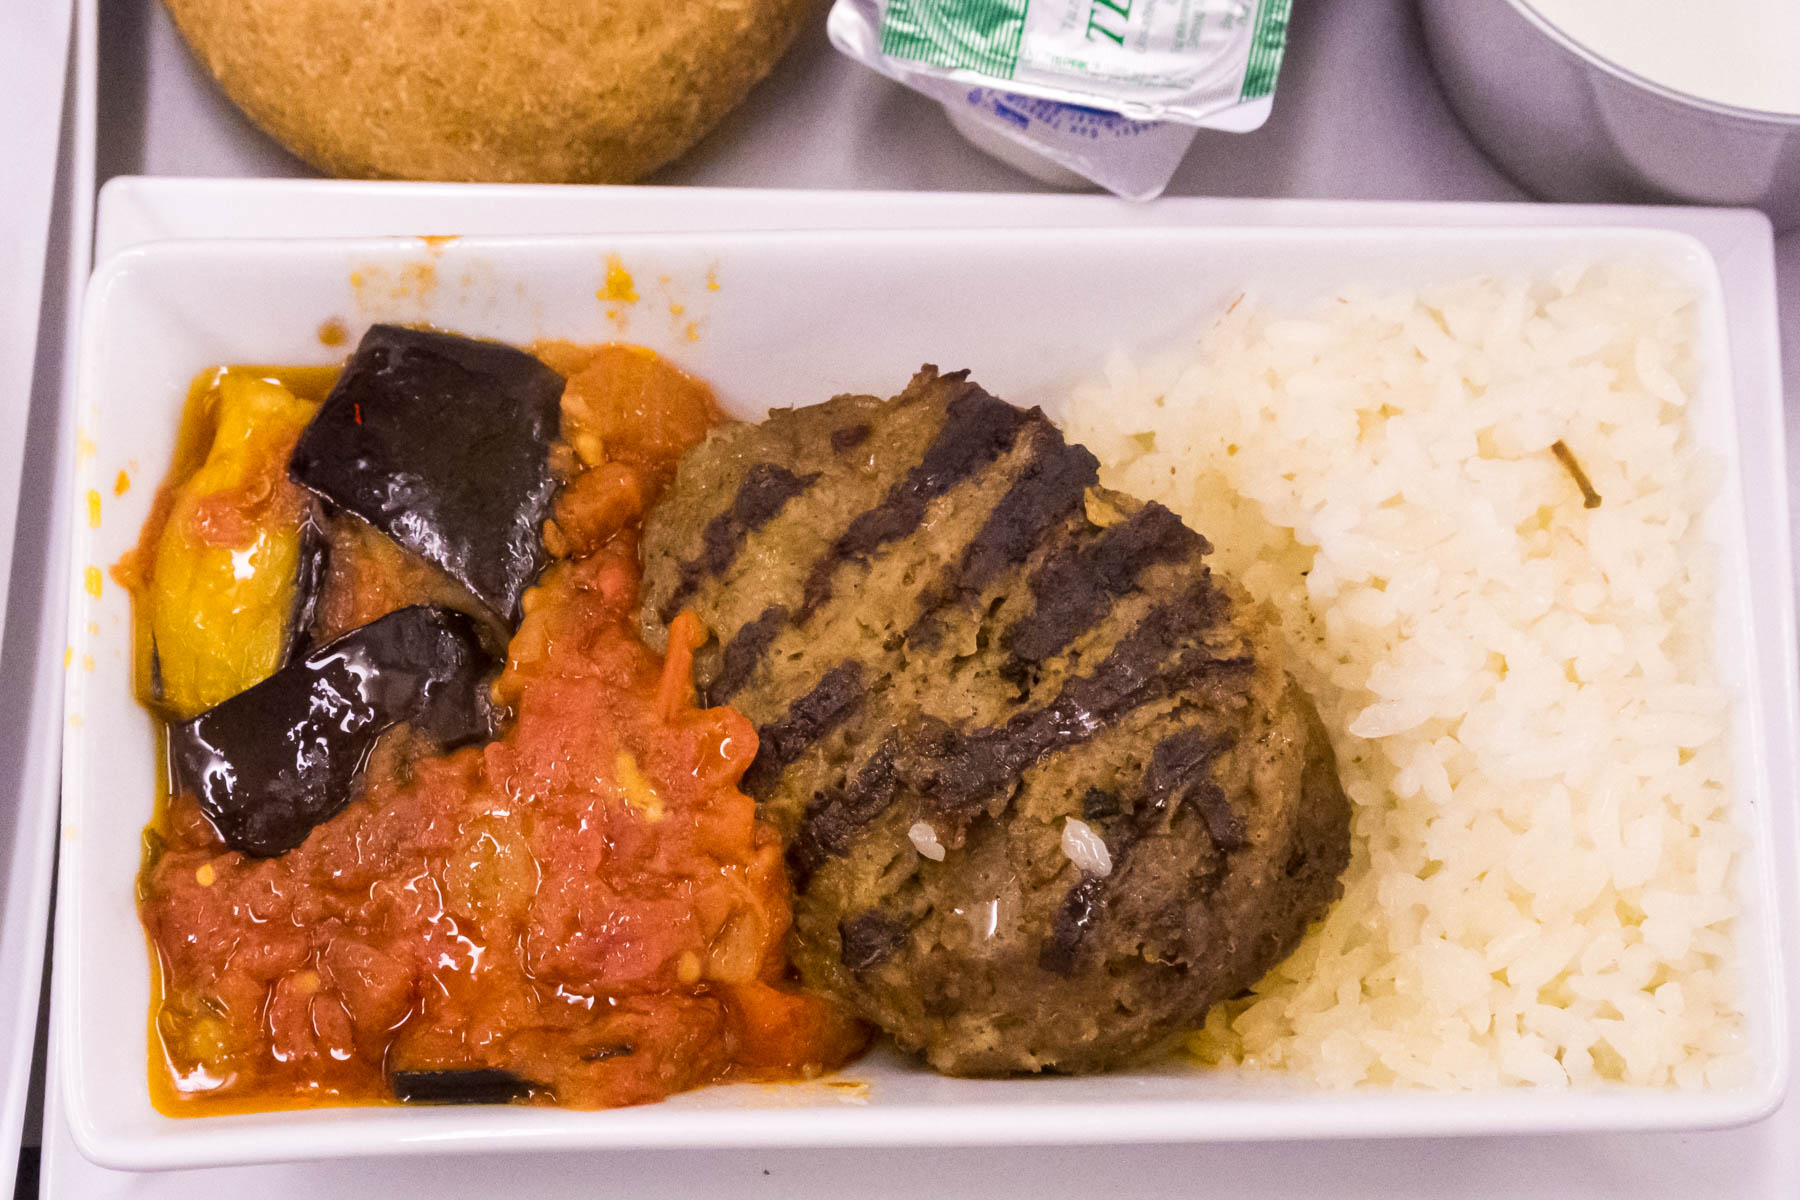 「肉々しさ」と風合い、脂の焦げた香ばしさがまさに「ステーキ」　ハンバーグに対する概念を変えた一品　人生で一番美味しかったトルコ航空の機内食ビーフハンバーグ　撮影：NIKON1 V1 + 1 NIKKOR 10-30mm